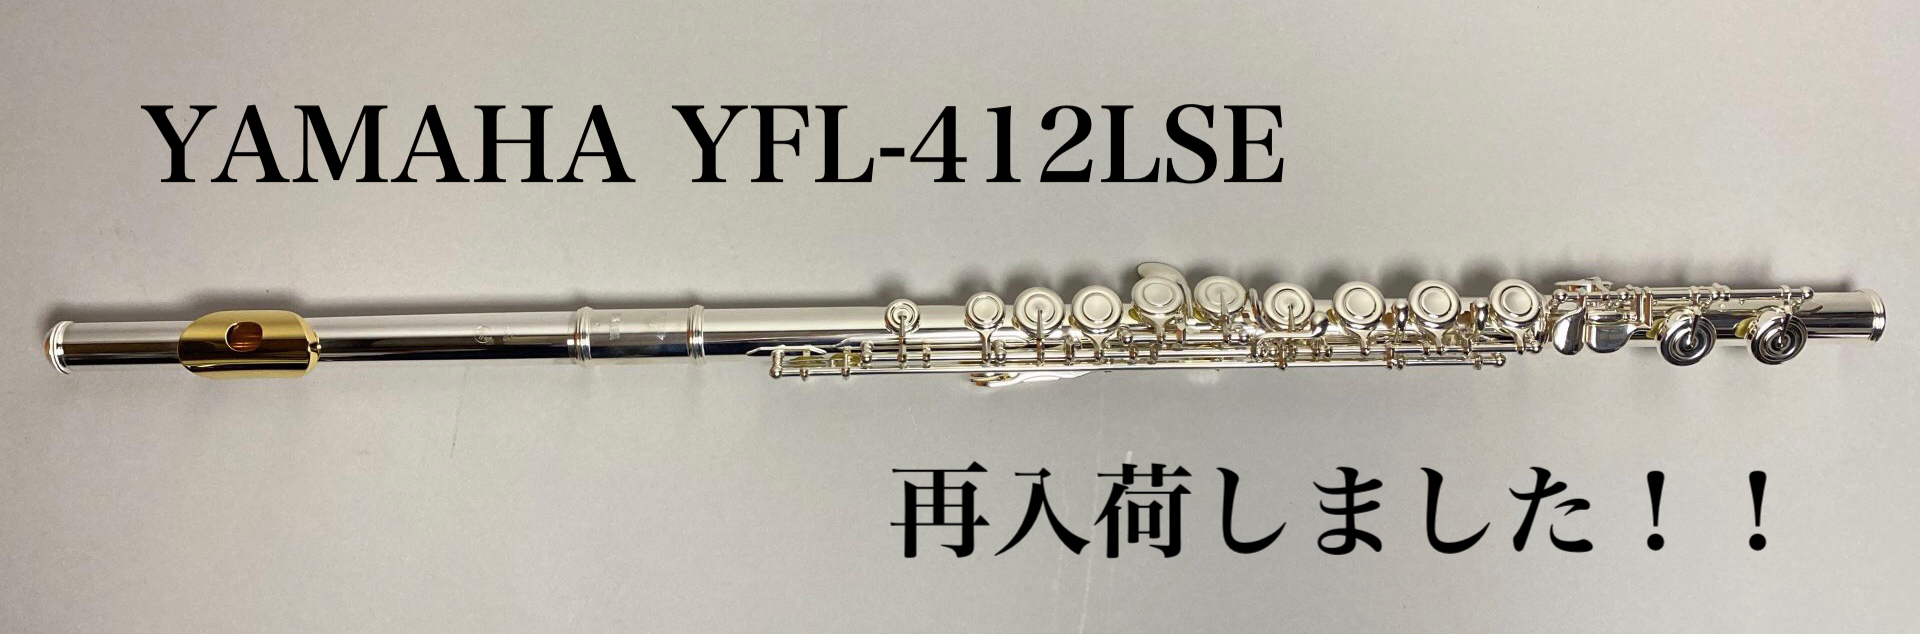 【フルート】島村楽器×YAMAHAコラボレーションモデル『YFL-412LSE』が再入荷しました！